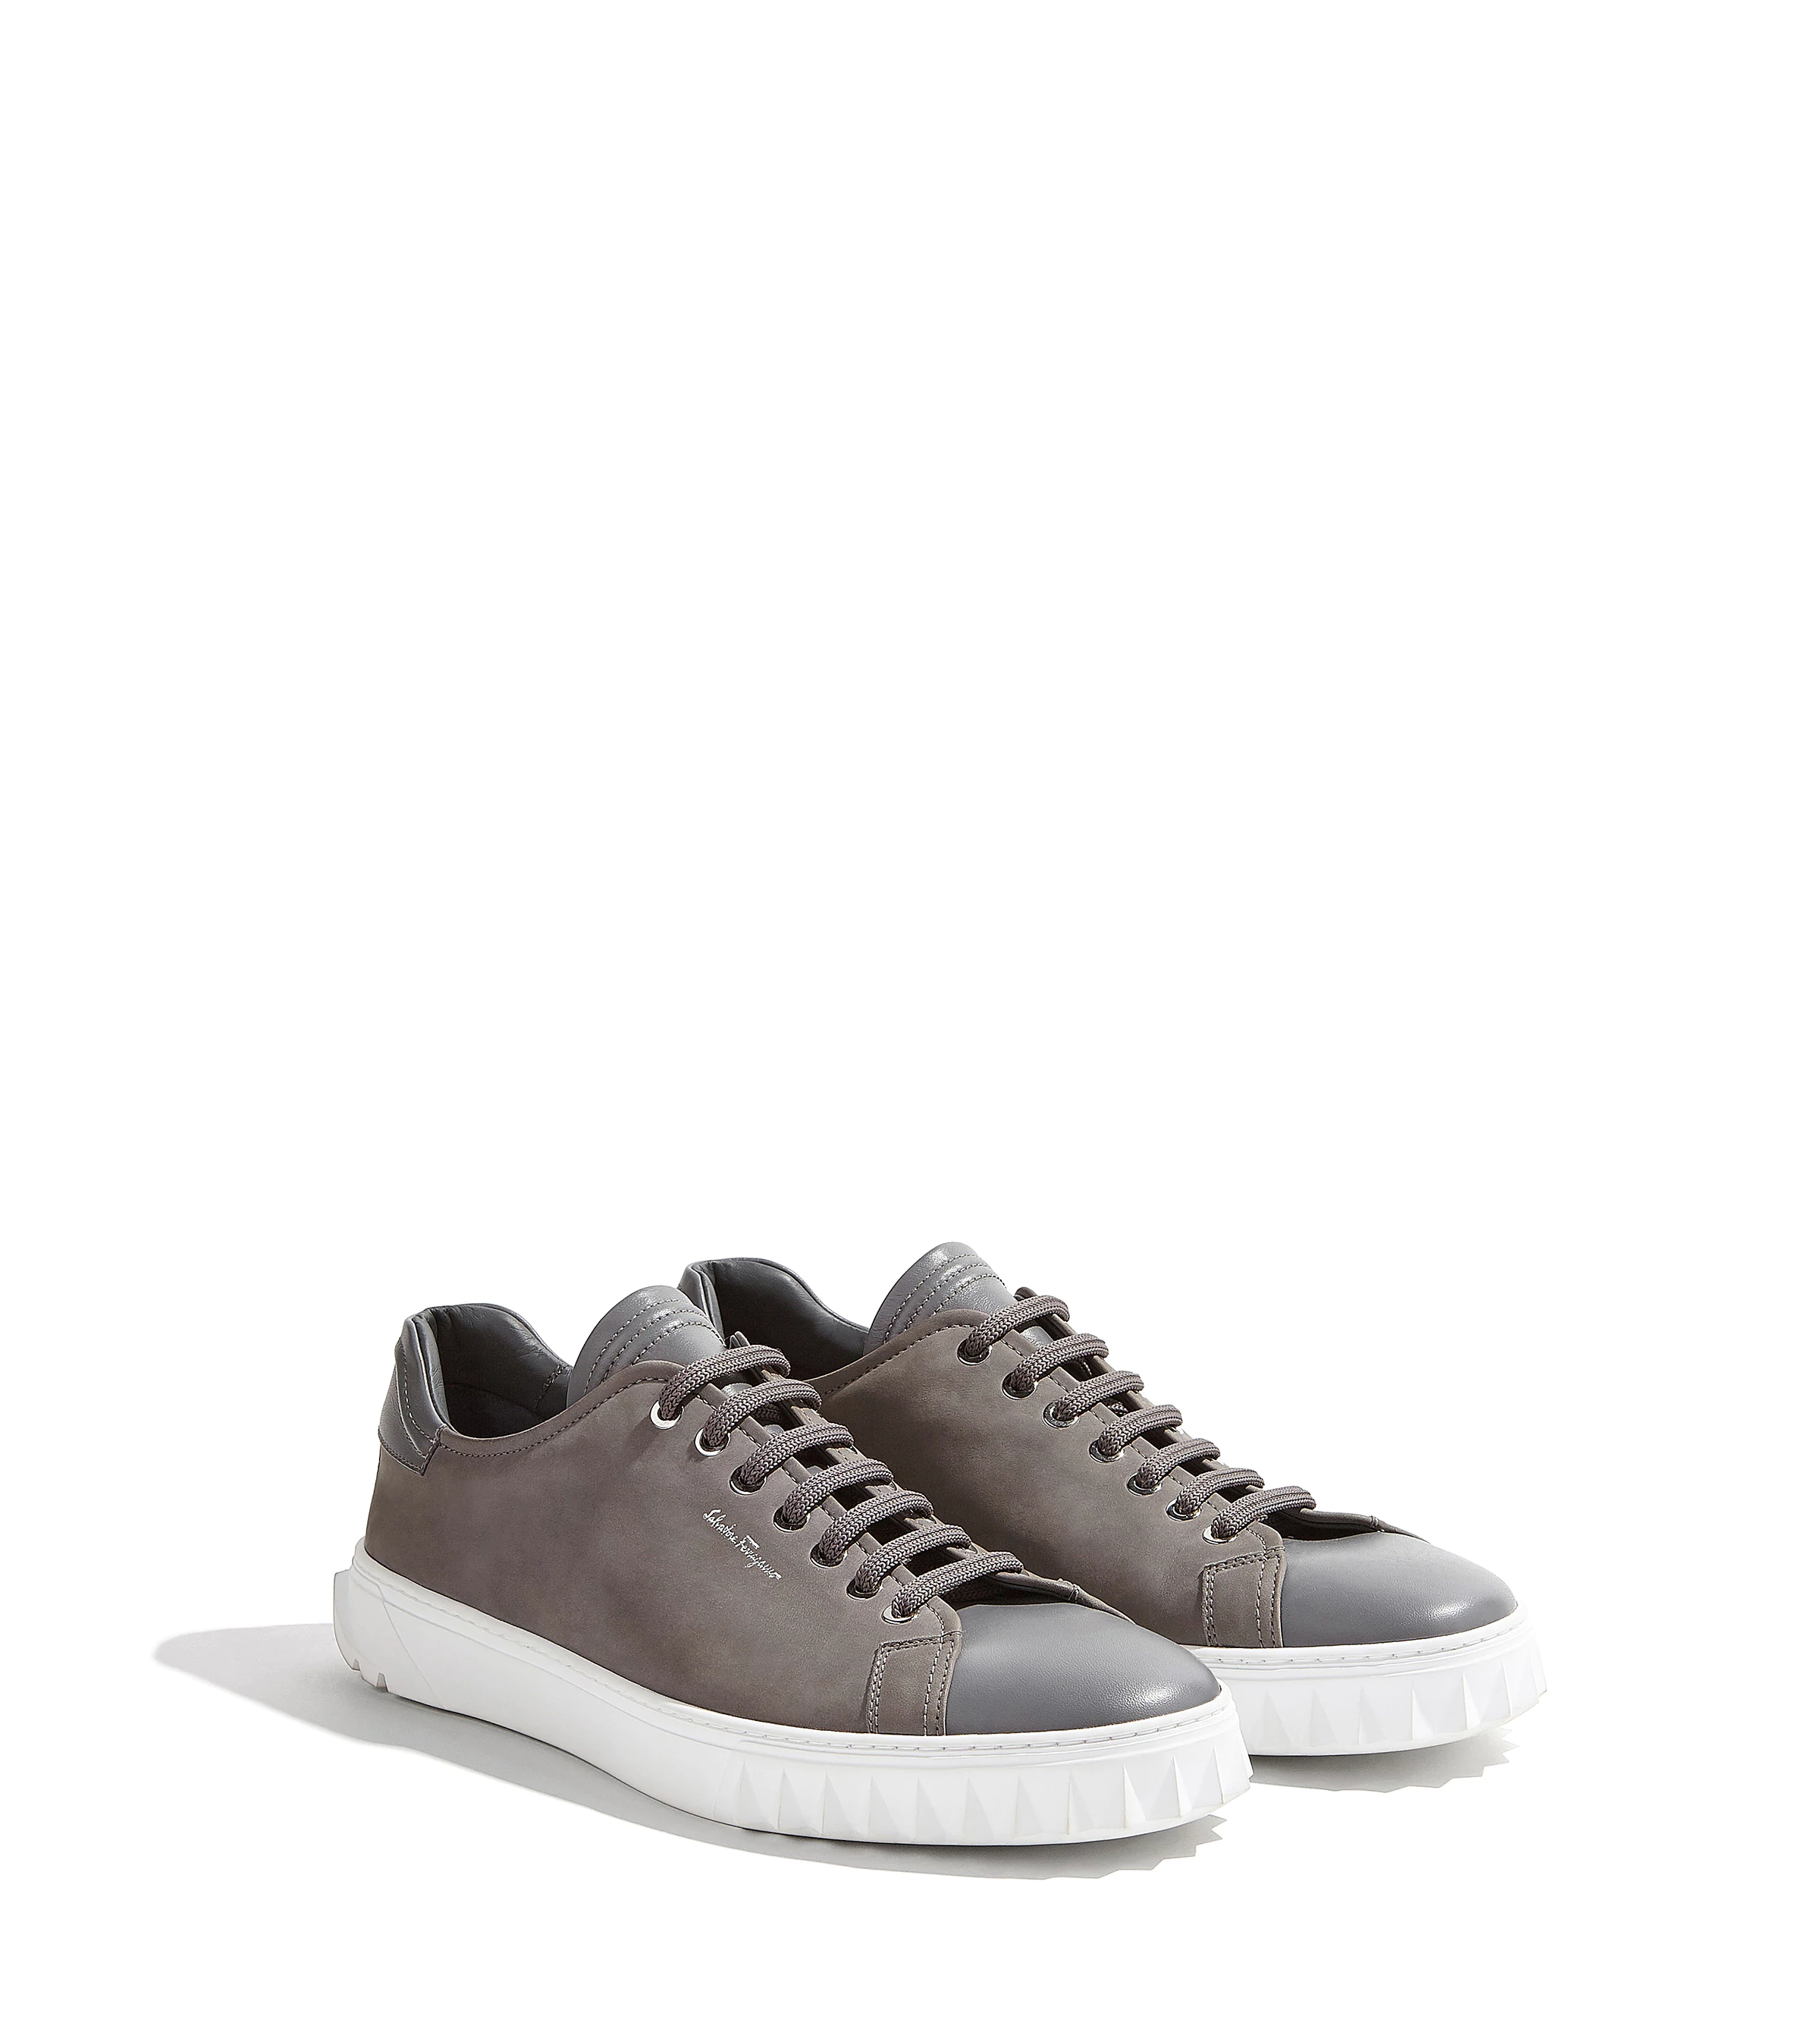 Shop the Ferragamo Grey Derby Sneakers / $775 AUD